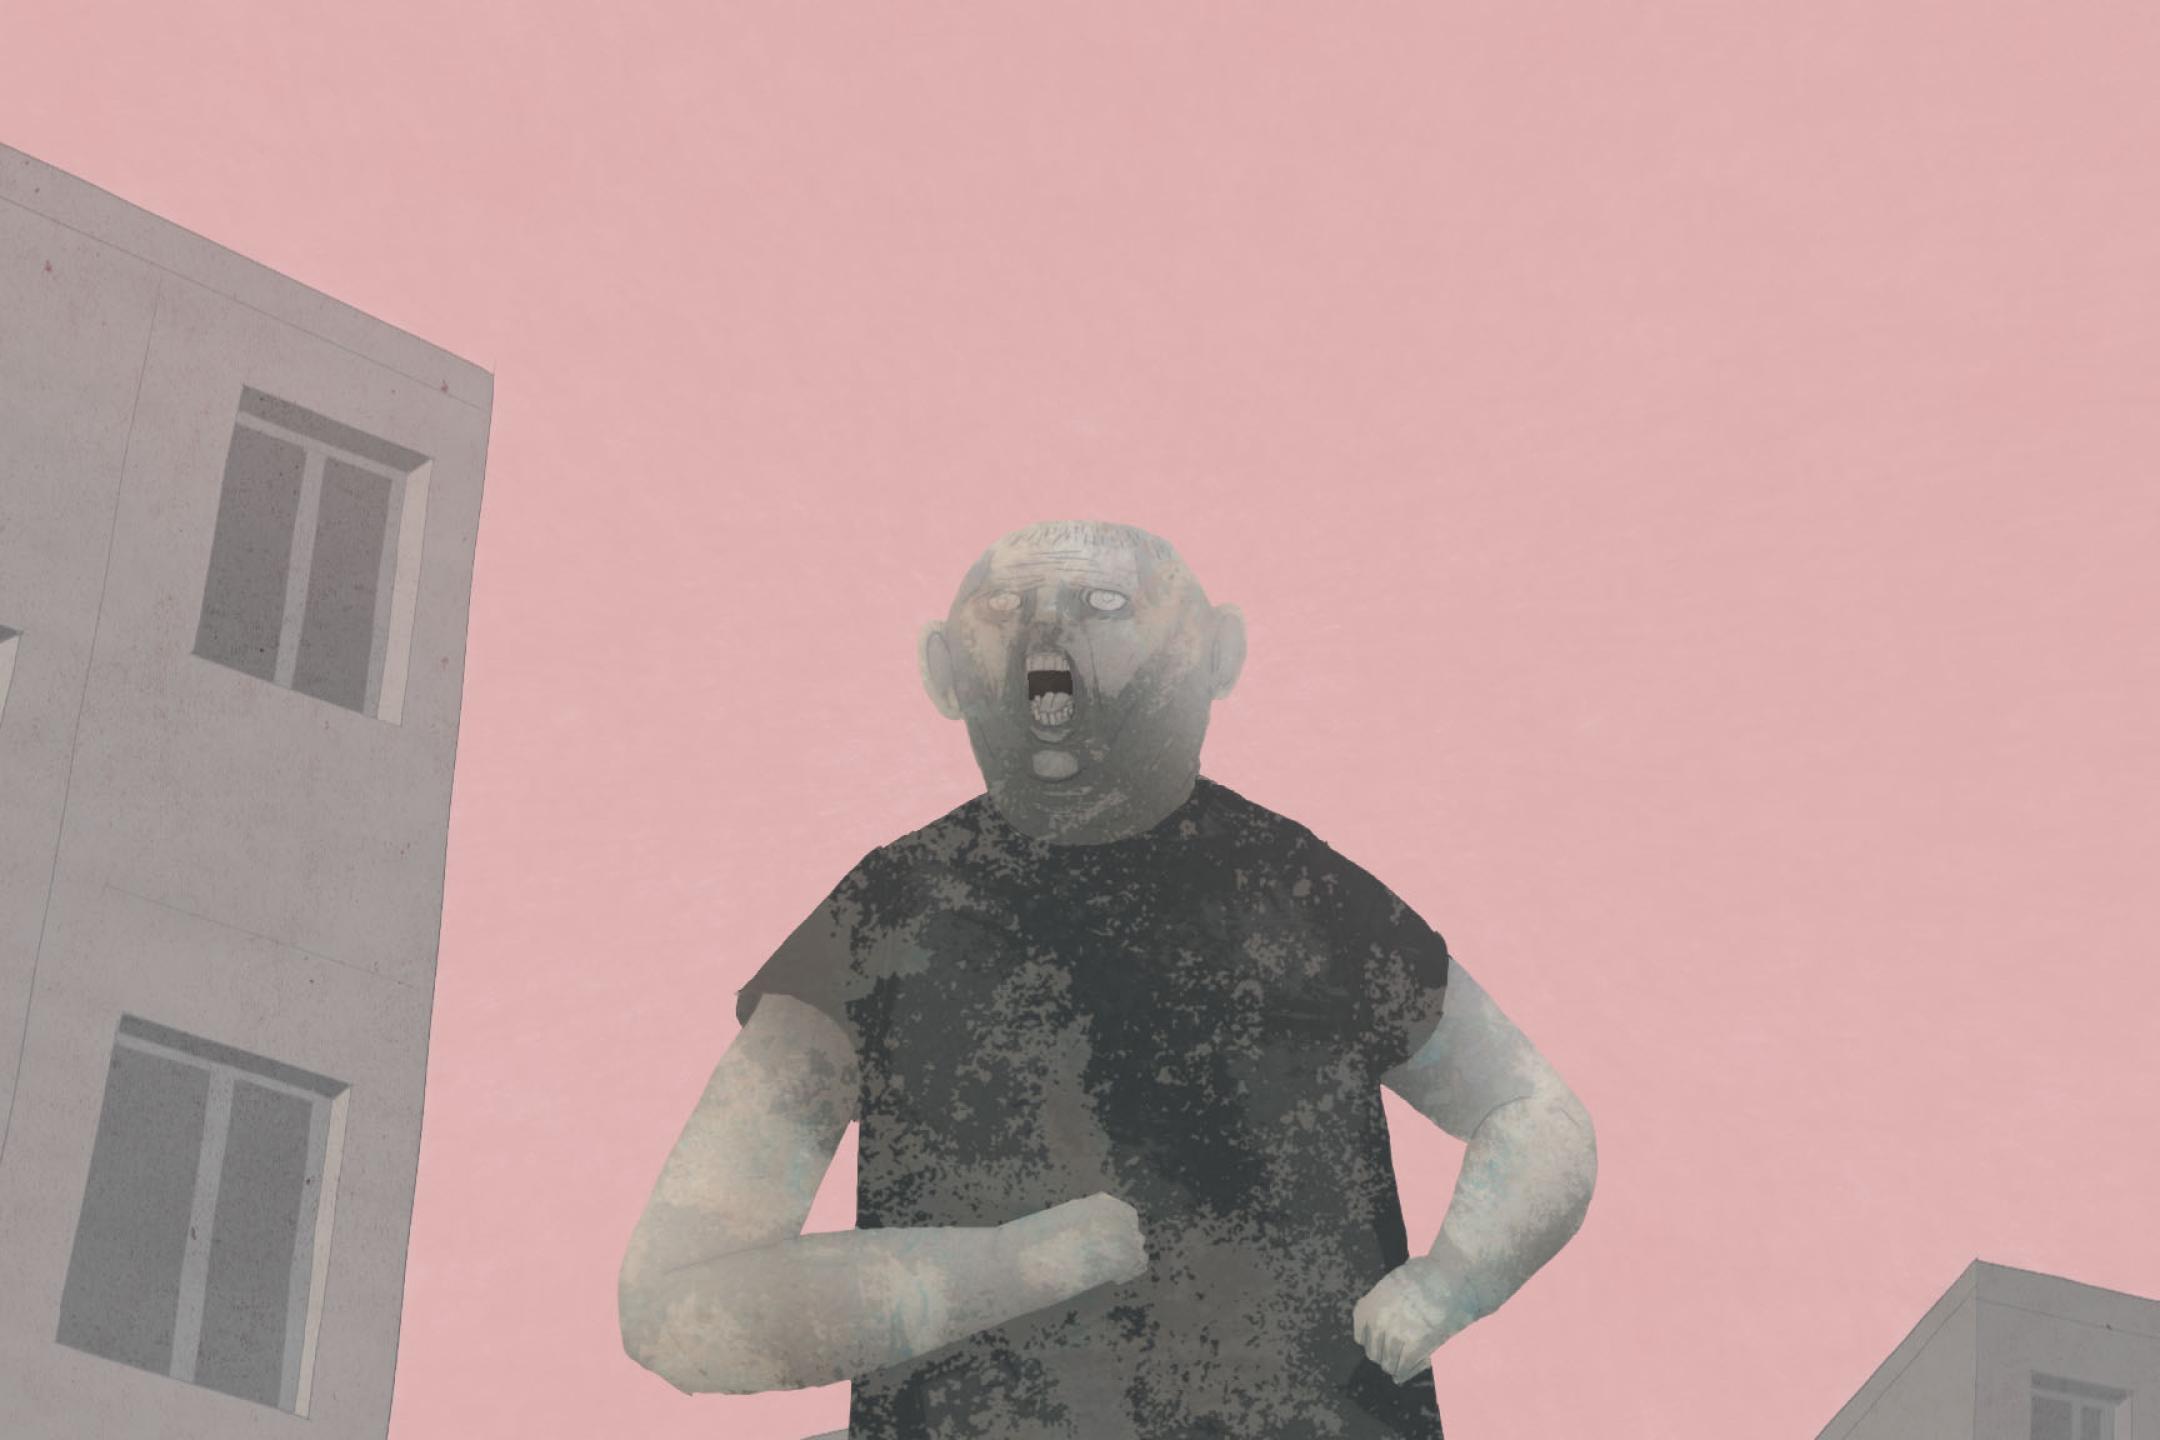 Eine menschenähnliche Figur mit offenem Mund läuft mit angewinkelten Armen an Häusern vorbei. Wir schauen aus der Froschperspektive, der Himmel ist ein sattes pink